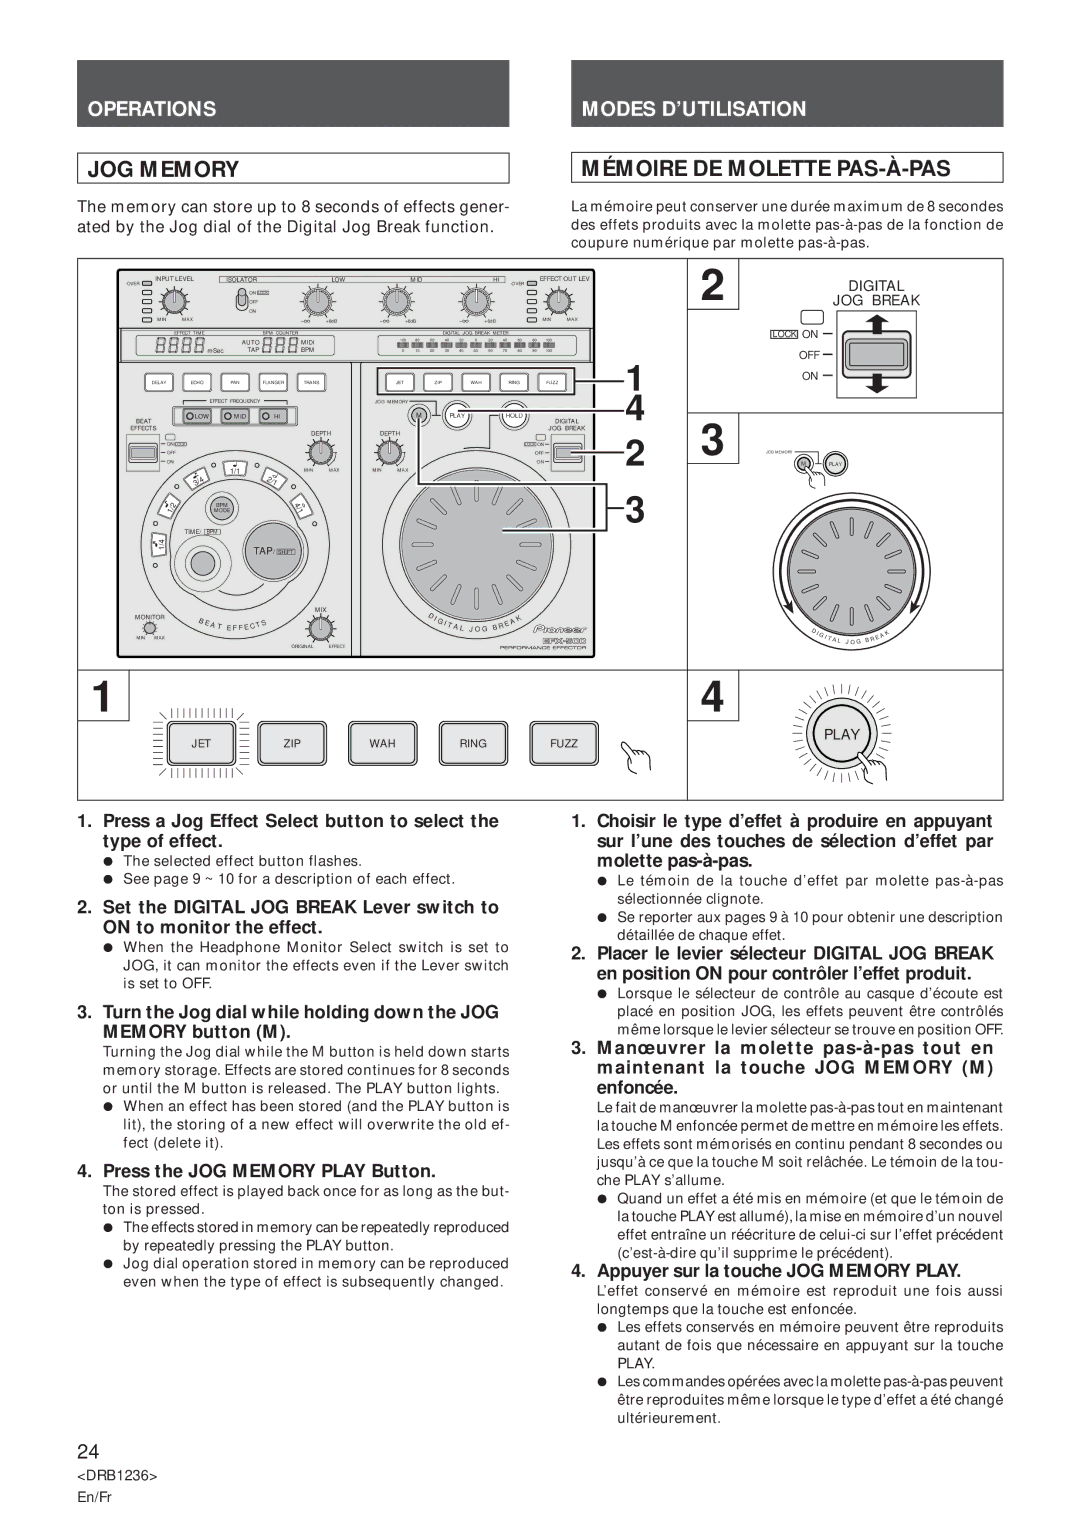 Pioneer Efx-500 Mémoire DE Molette PAS-À-PAS, Press the JOG Memory Play Button, Appuyer sur la touche JOG Memory Play 